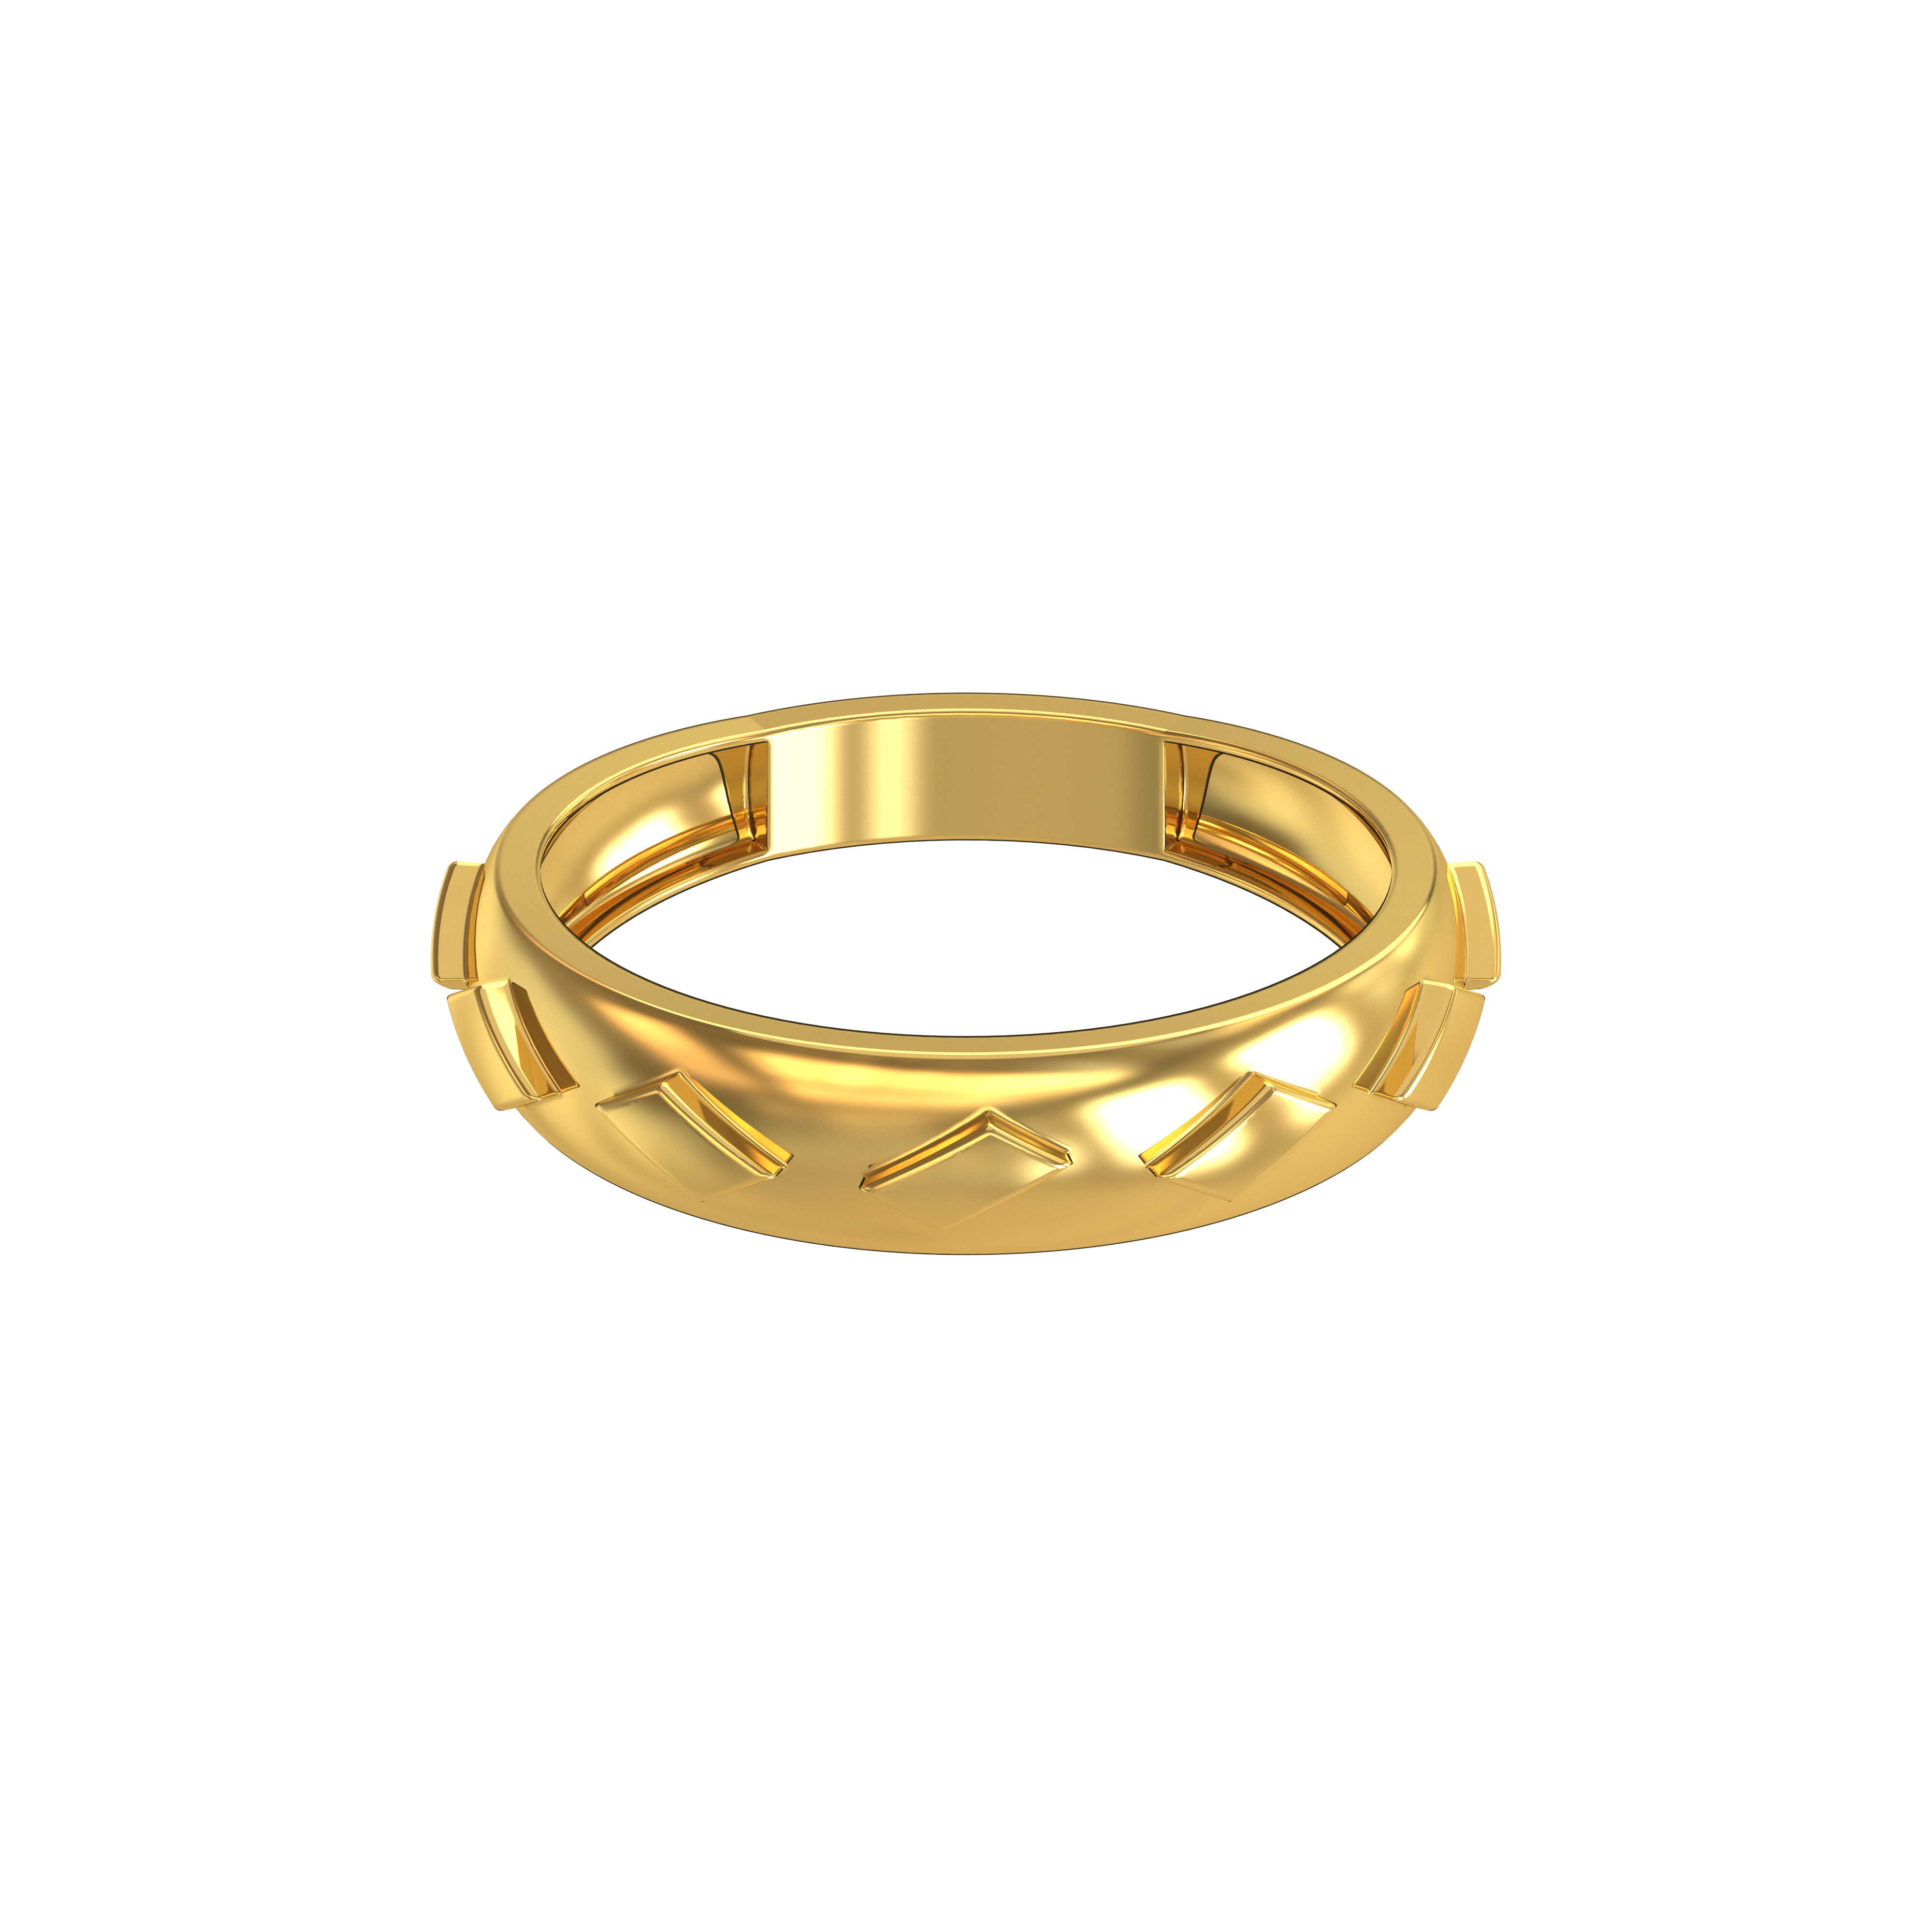 Gold Ring Design In Gram | 3d-mon.com